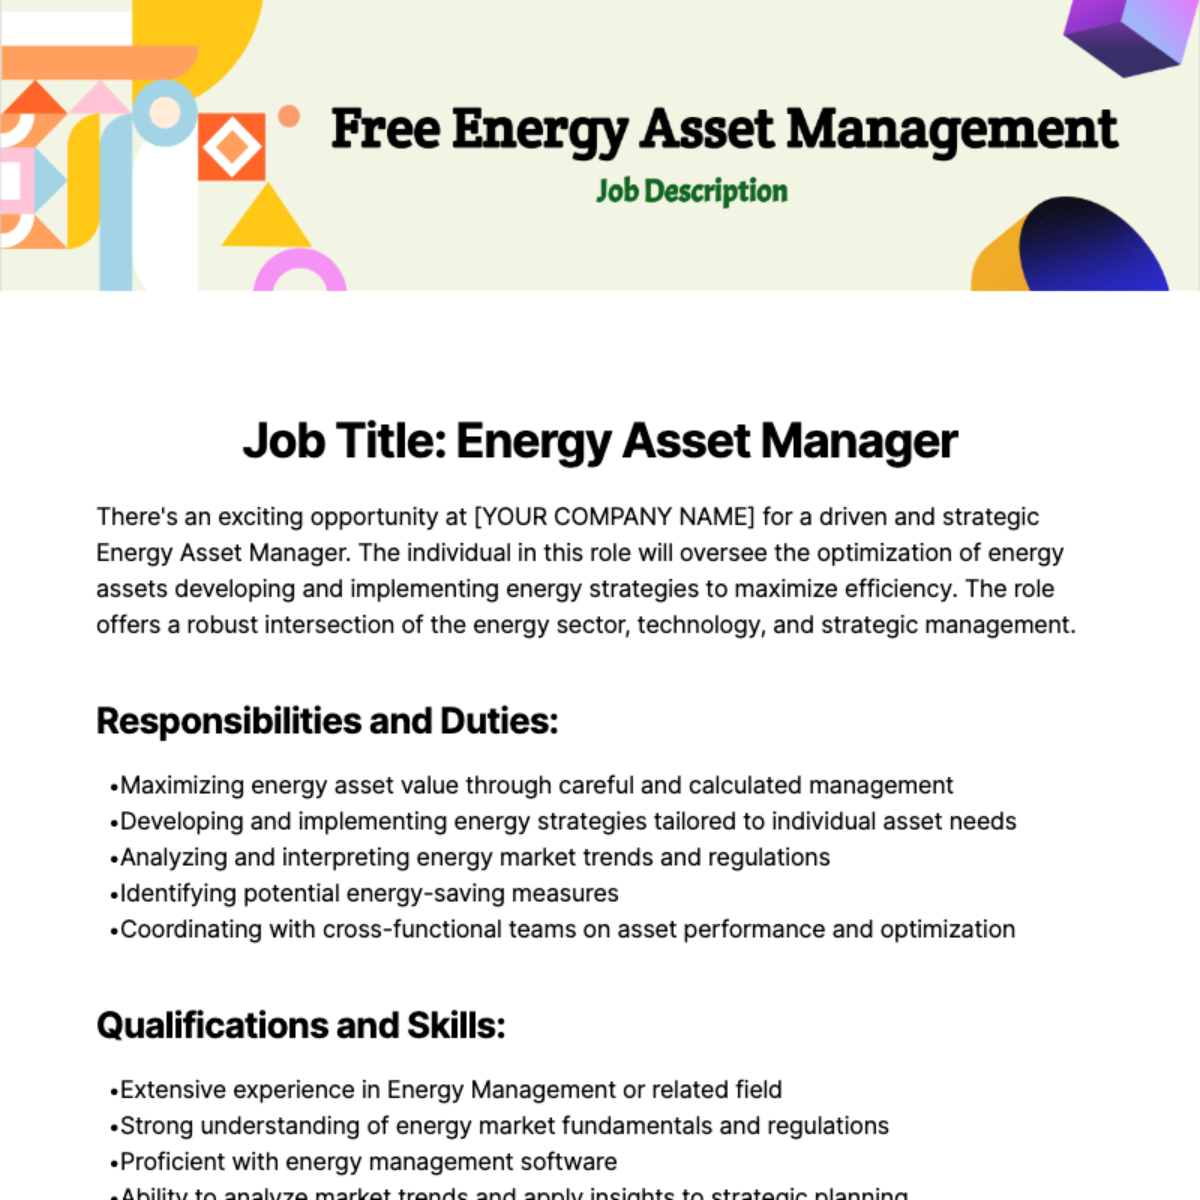 Energy Asset Management Job Description Template